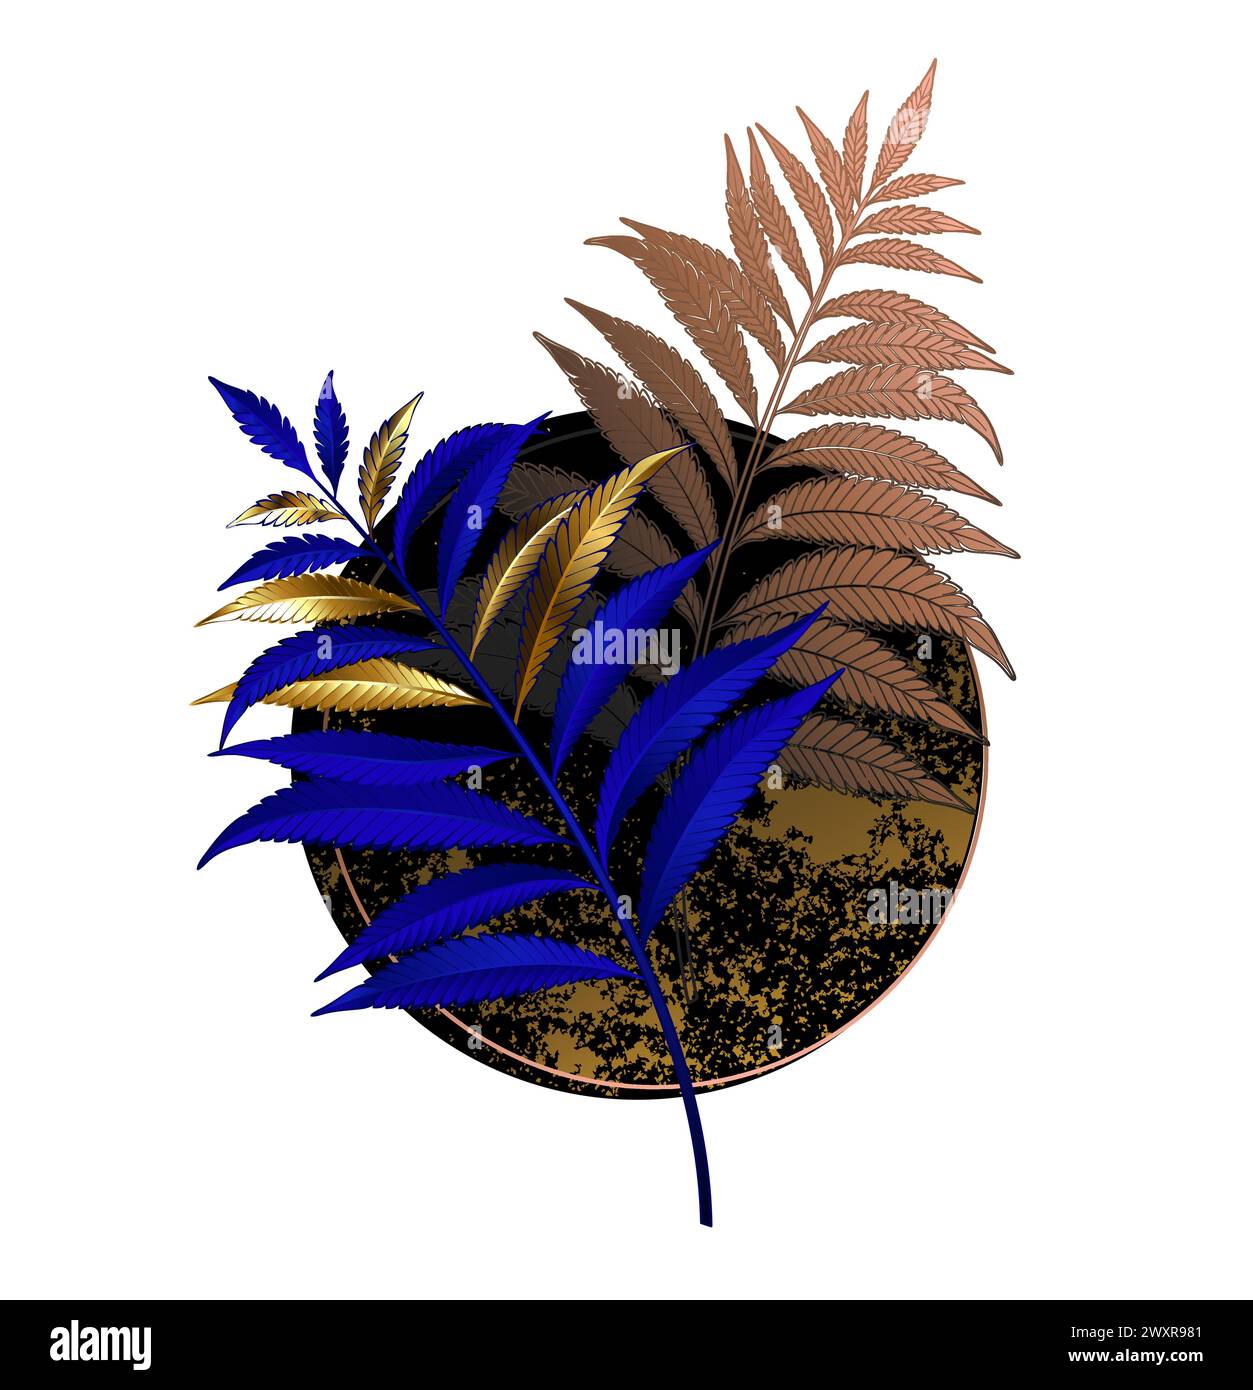 Asymmetrische, ungewöhnliche, florale Komposition aus Gold und Ultramarin, blauer Farnzweig mit schwarzem strukturiertem Kreis auf weißem Hintergrund. Niederlassung Farn. Stock Vektor